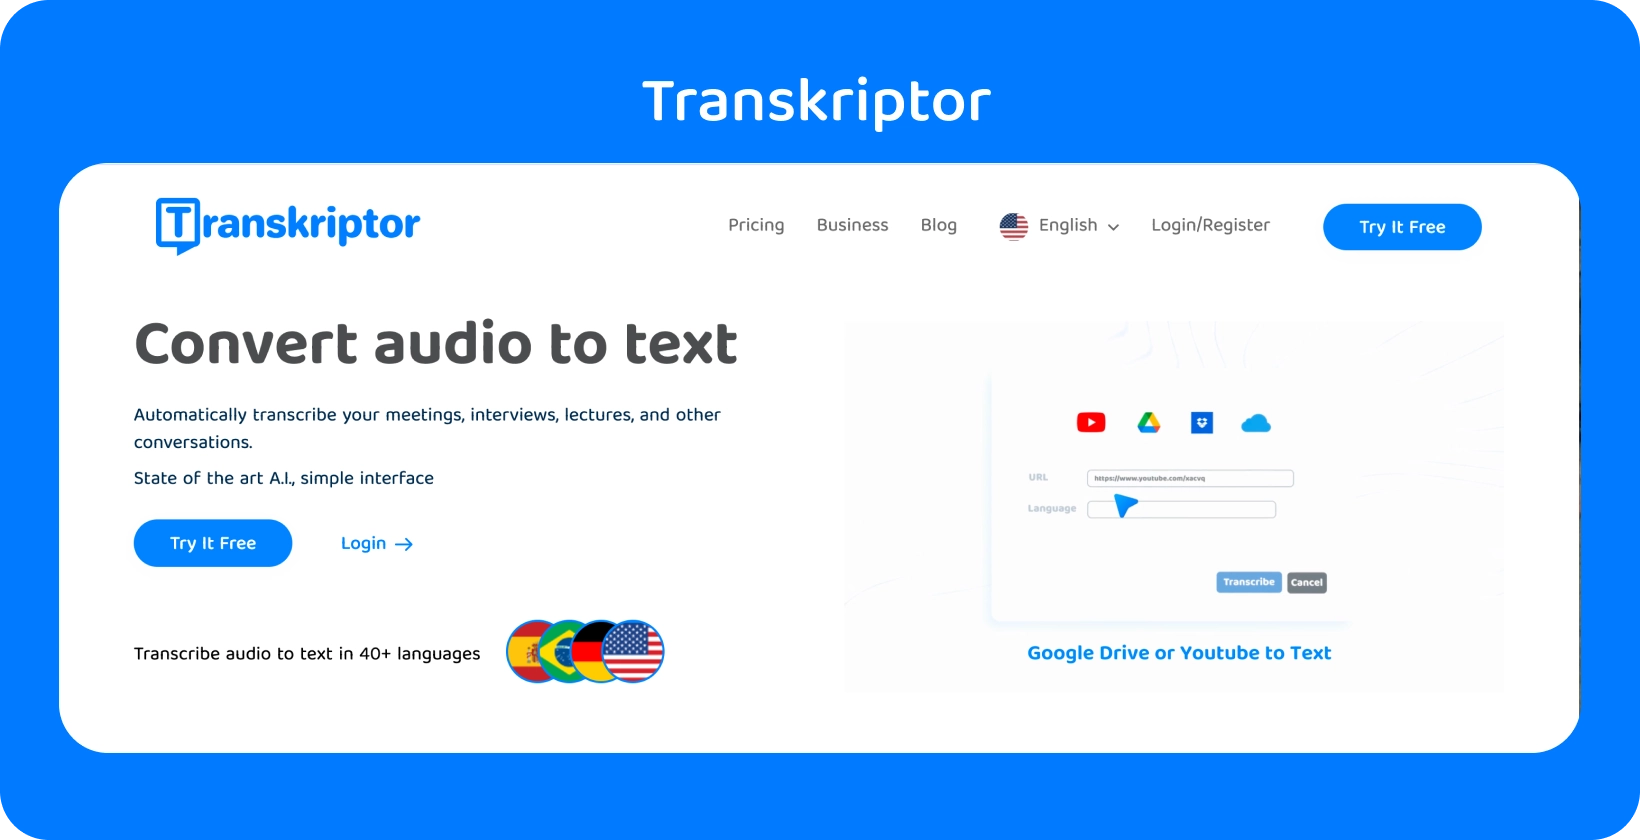 Η ιστοσελίδα του Transkriptor αναφέρει τη λειτουργία "Μετατροπή ήχου σε κείμενο", έτοιμη για εύκολη μεταγραφή.